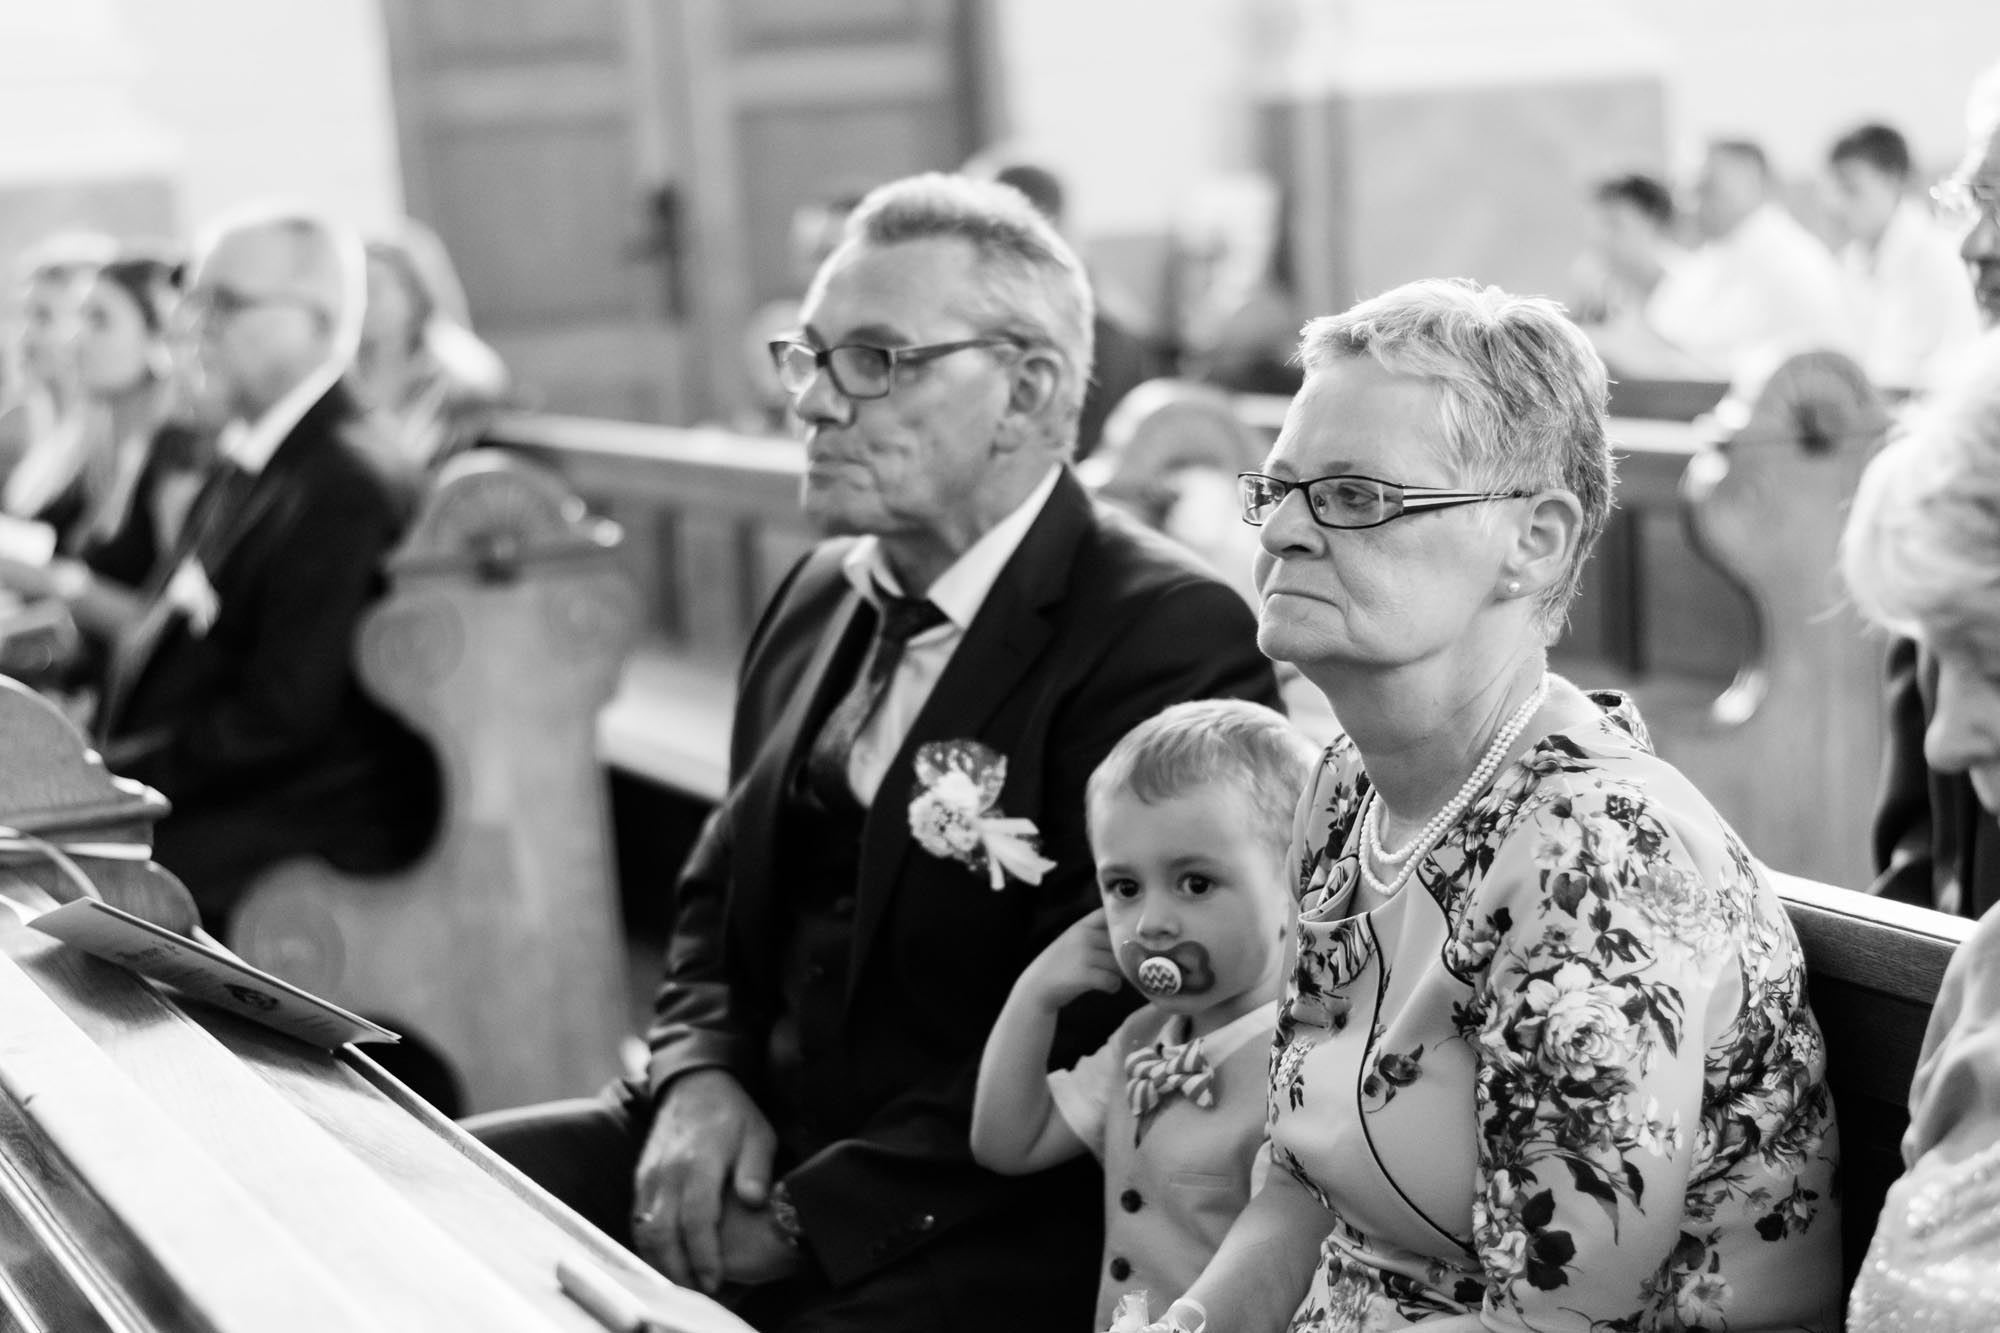 Hochzeitsfotos_Hochzeitsreportage in Wien_Kirche_Brauteltern lauschen gespannt derTrauung